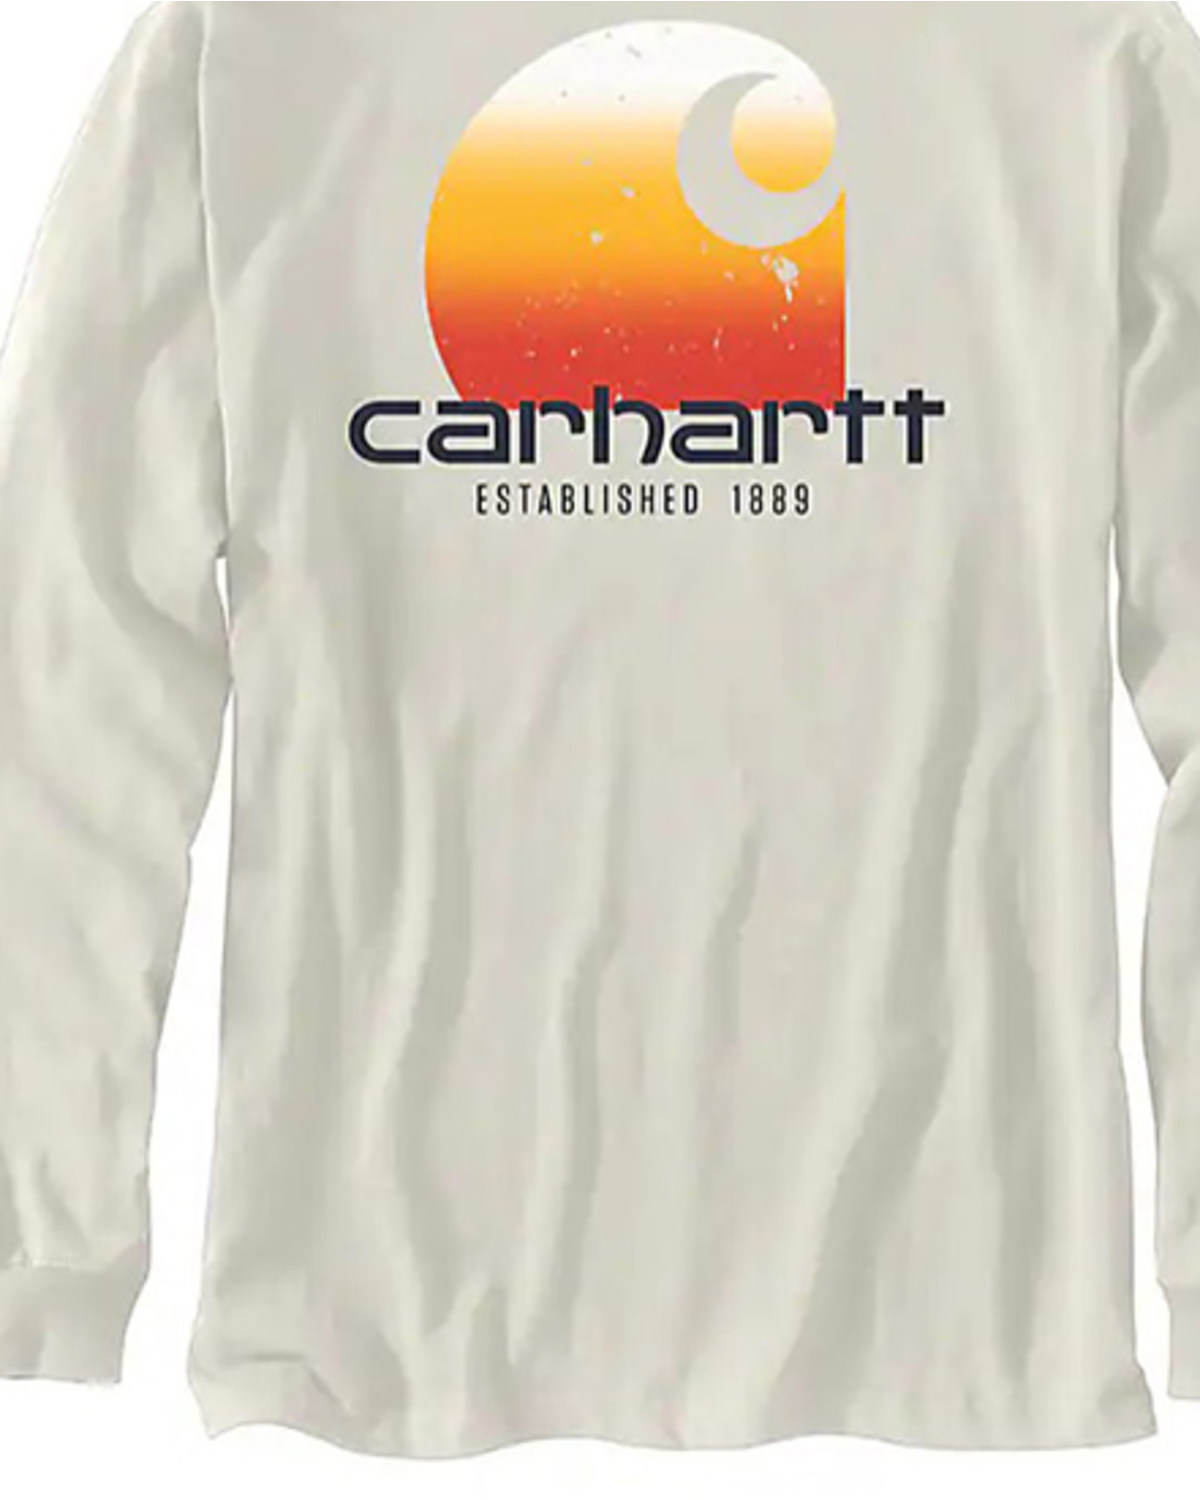 Carhartt Men's Relaxed Fit Heavyweight Long Sleeve Graphic Work T-Shirt